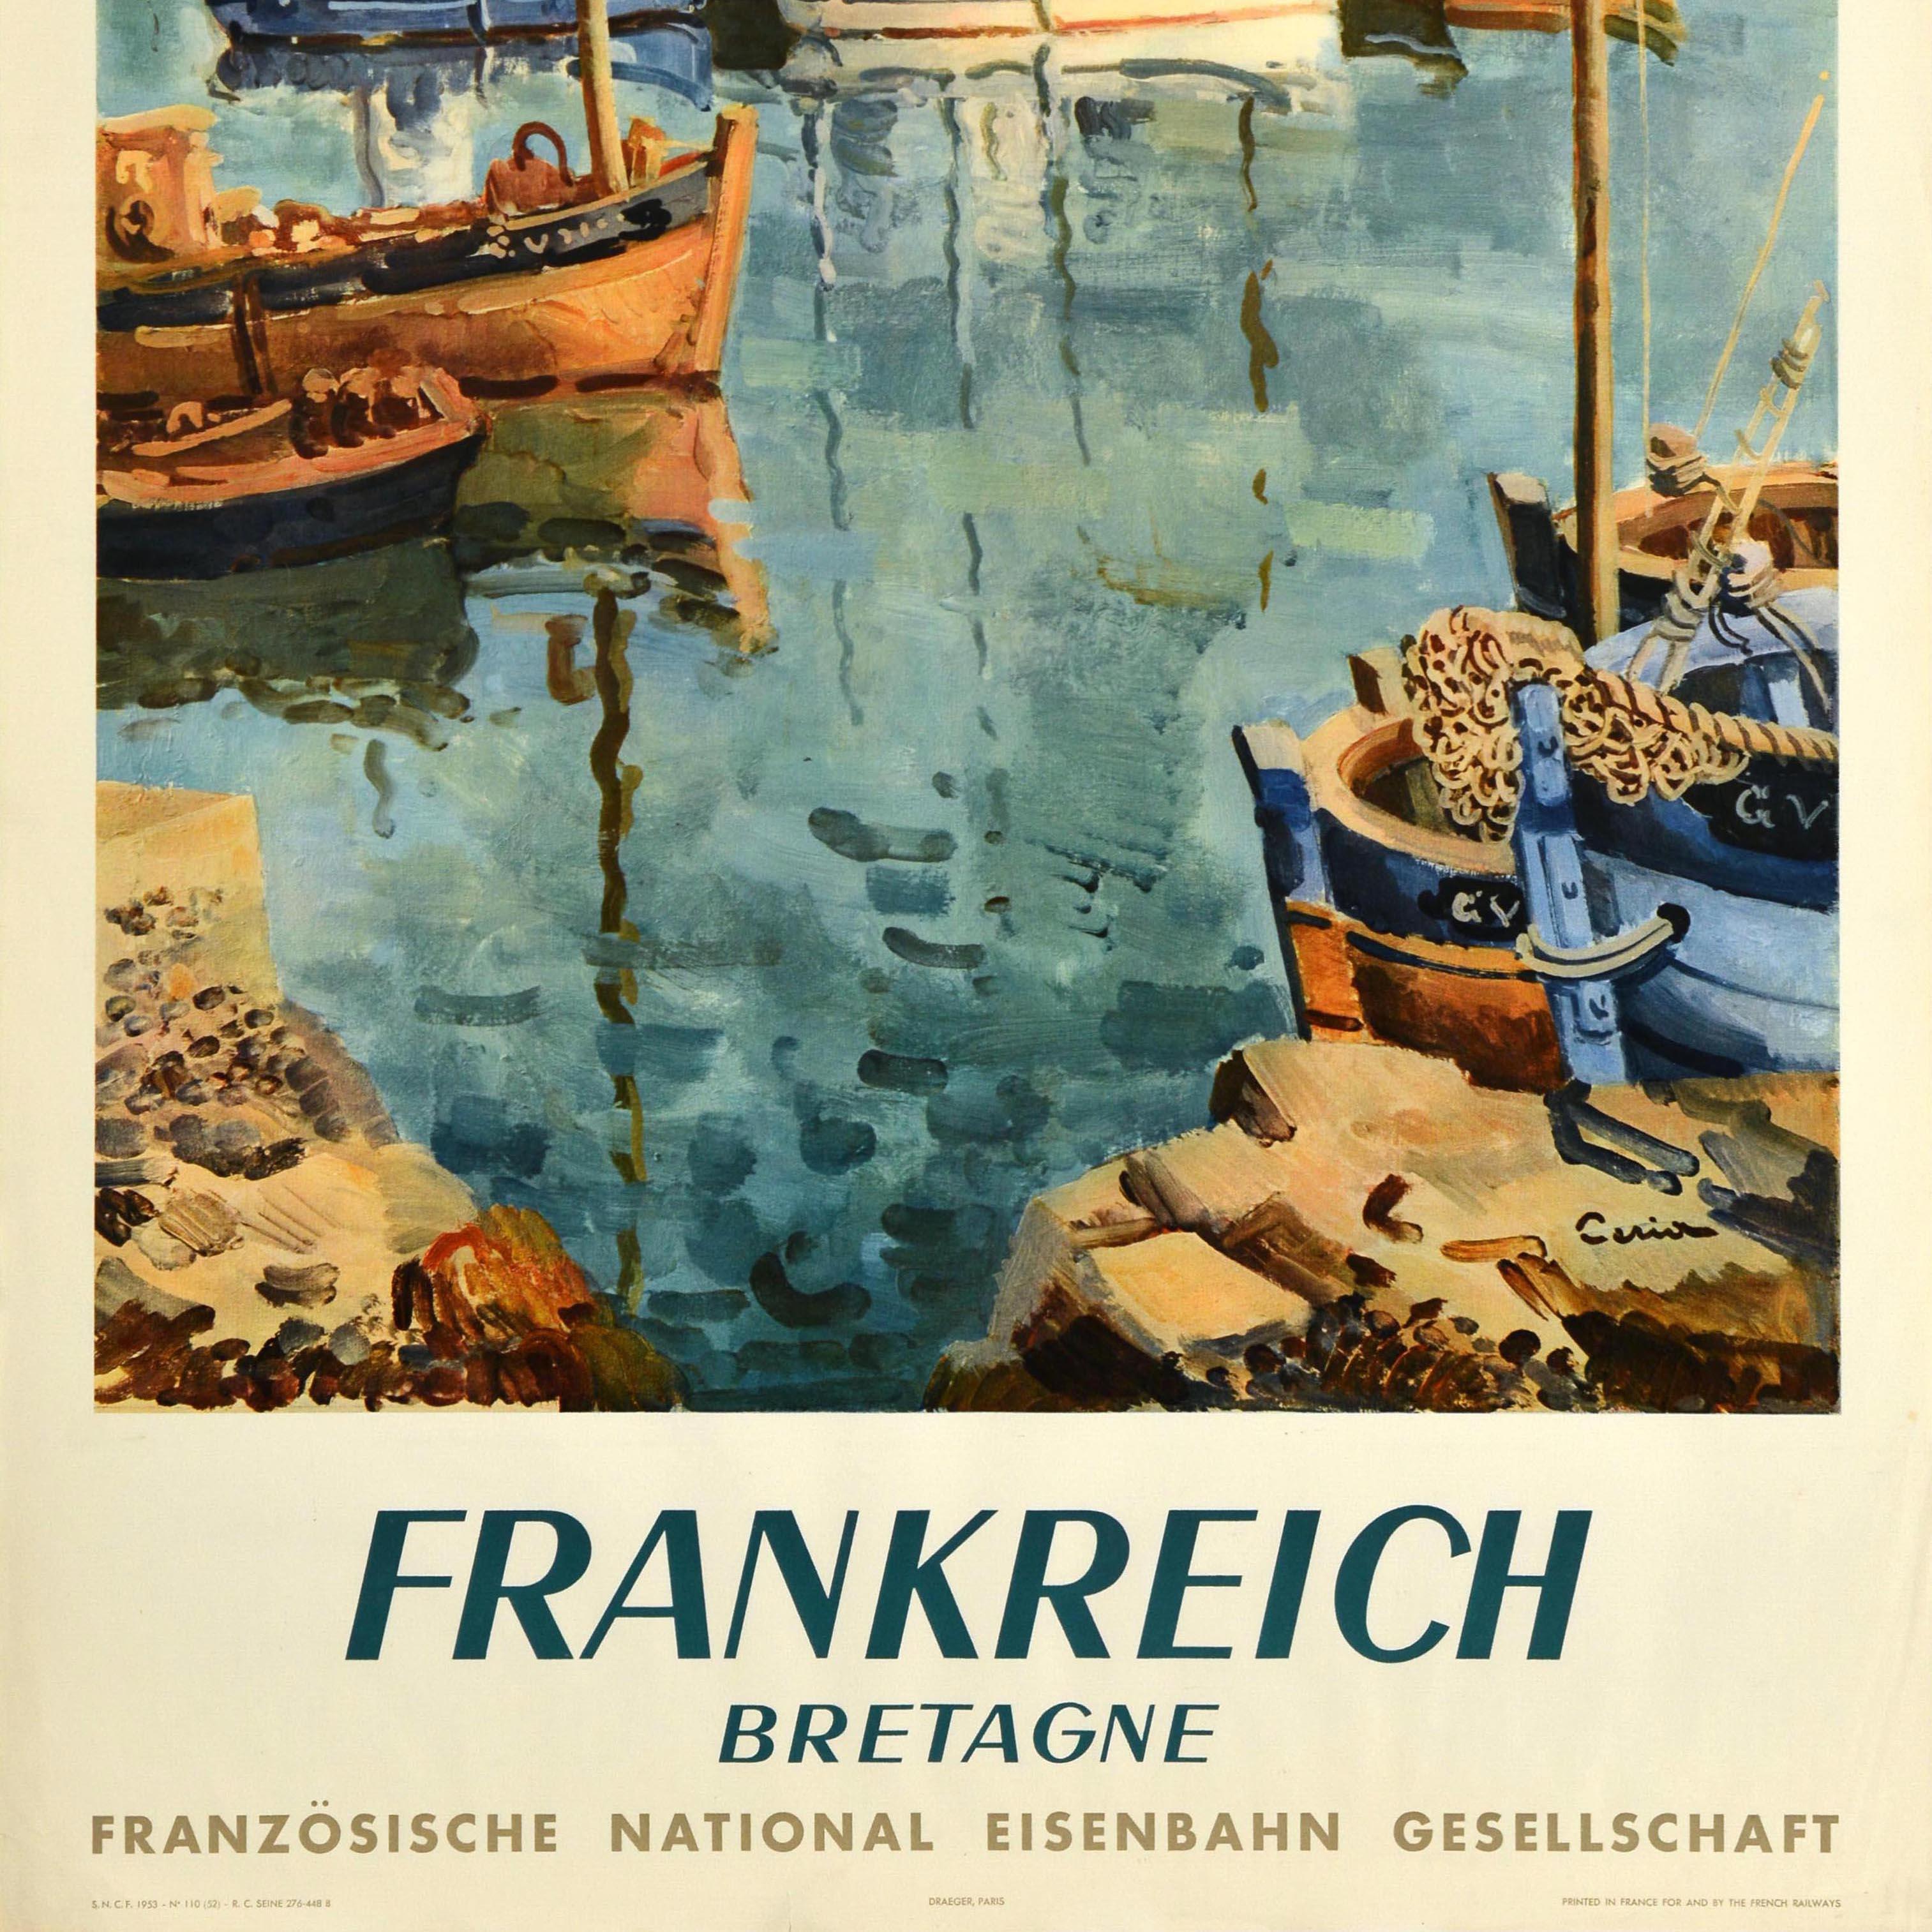 Affiche originale de voyage ferroviaire pour la France et la Bretagne en allemand - Frankreich Bretagne - publiée par la Société Nationale des Chemins de Fer Français (SNCF ; fondée en 1938). Elle présente une peinture colorée représentant une vue